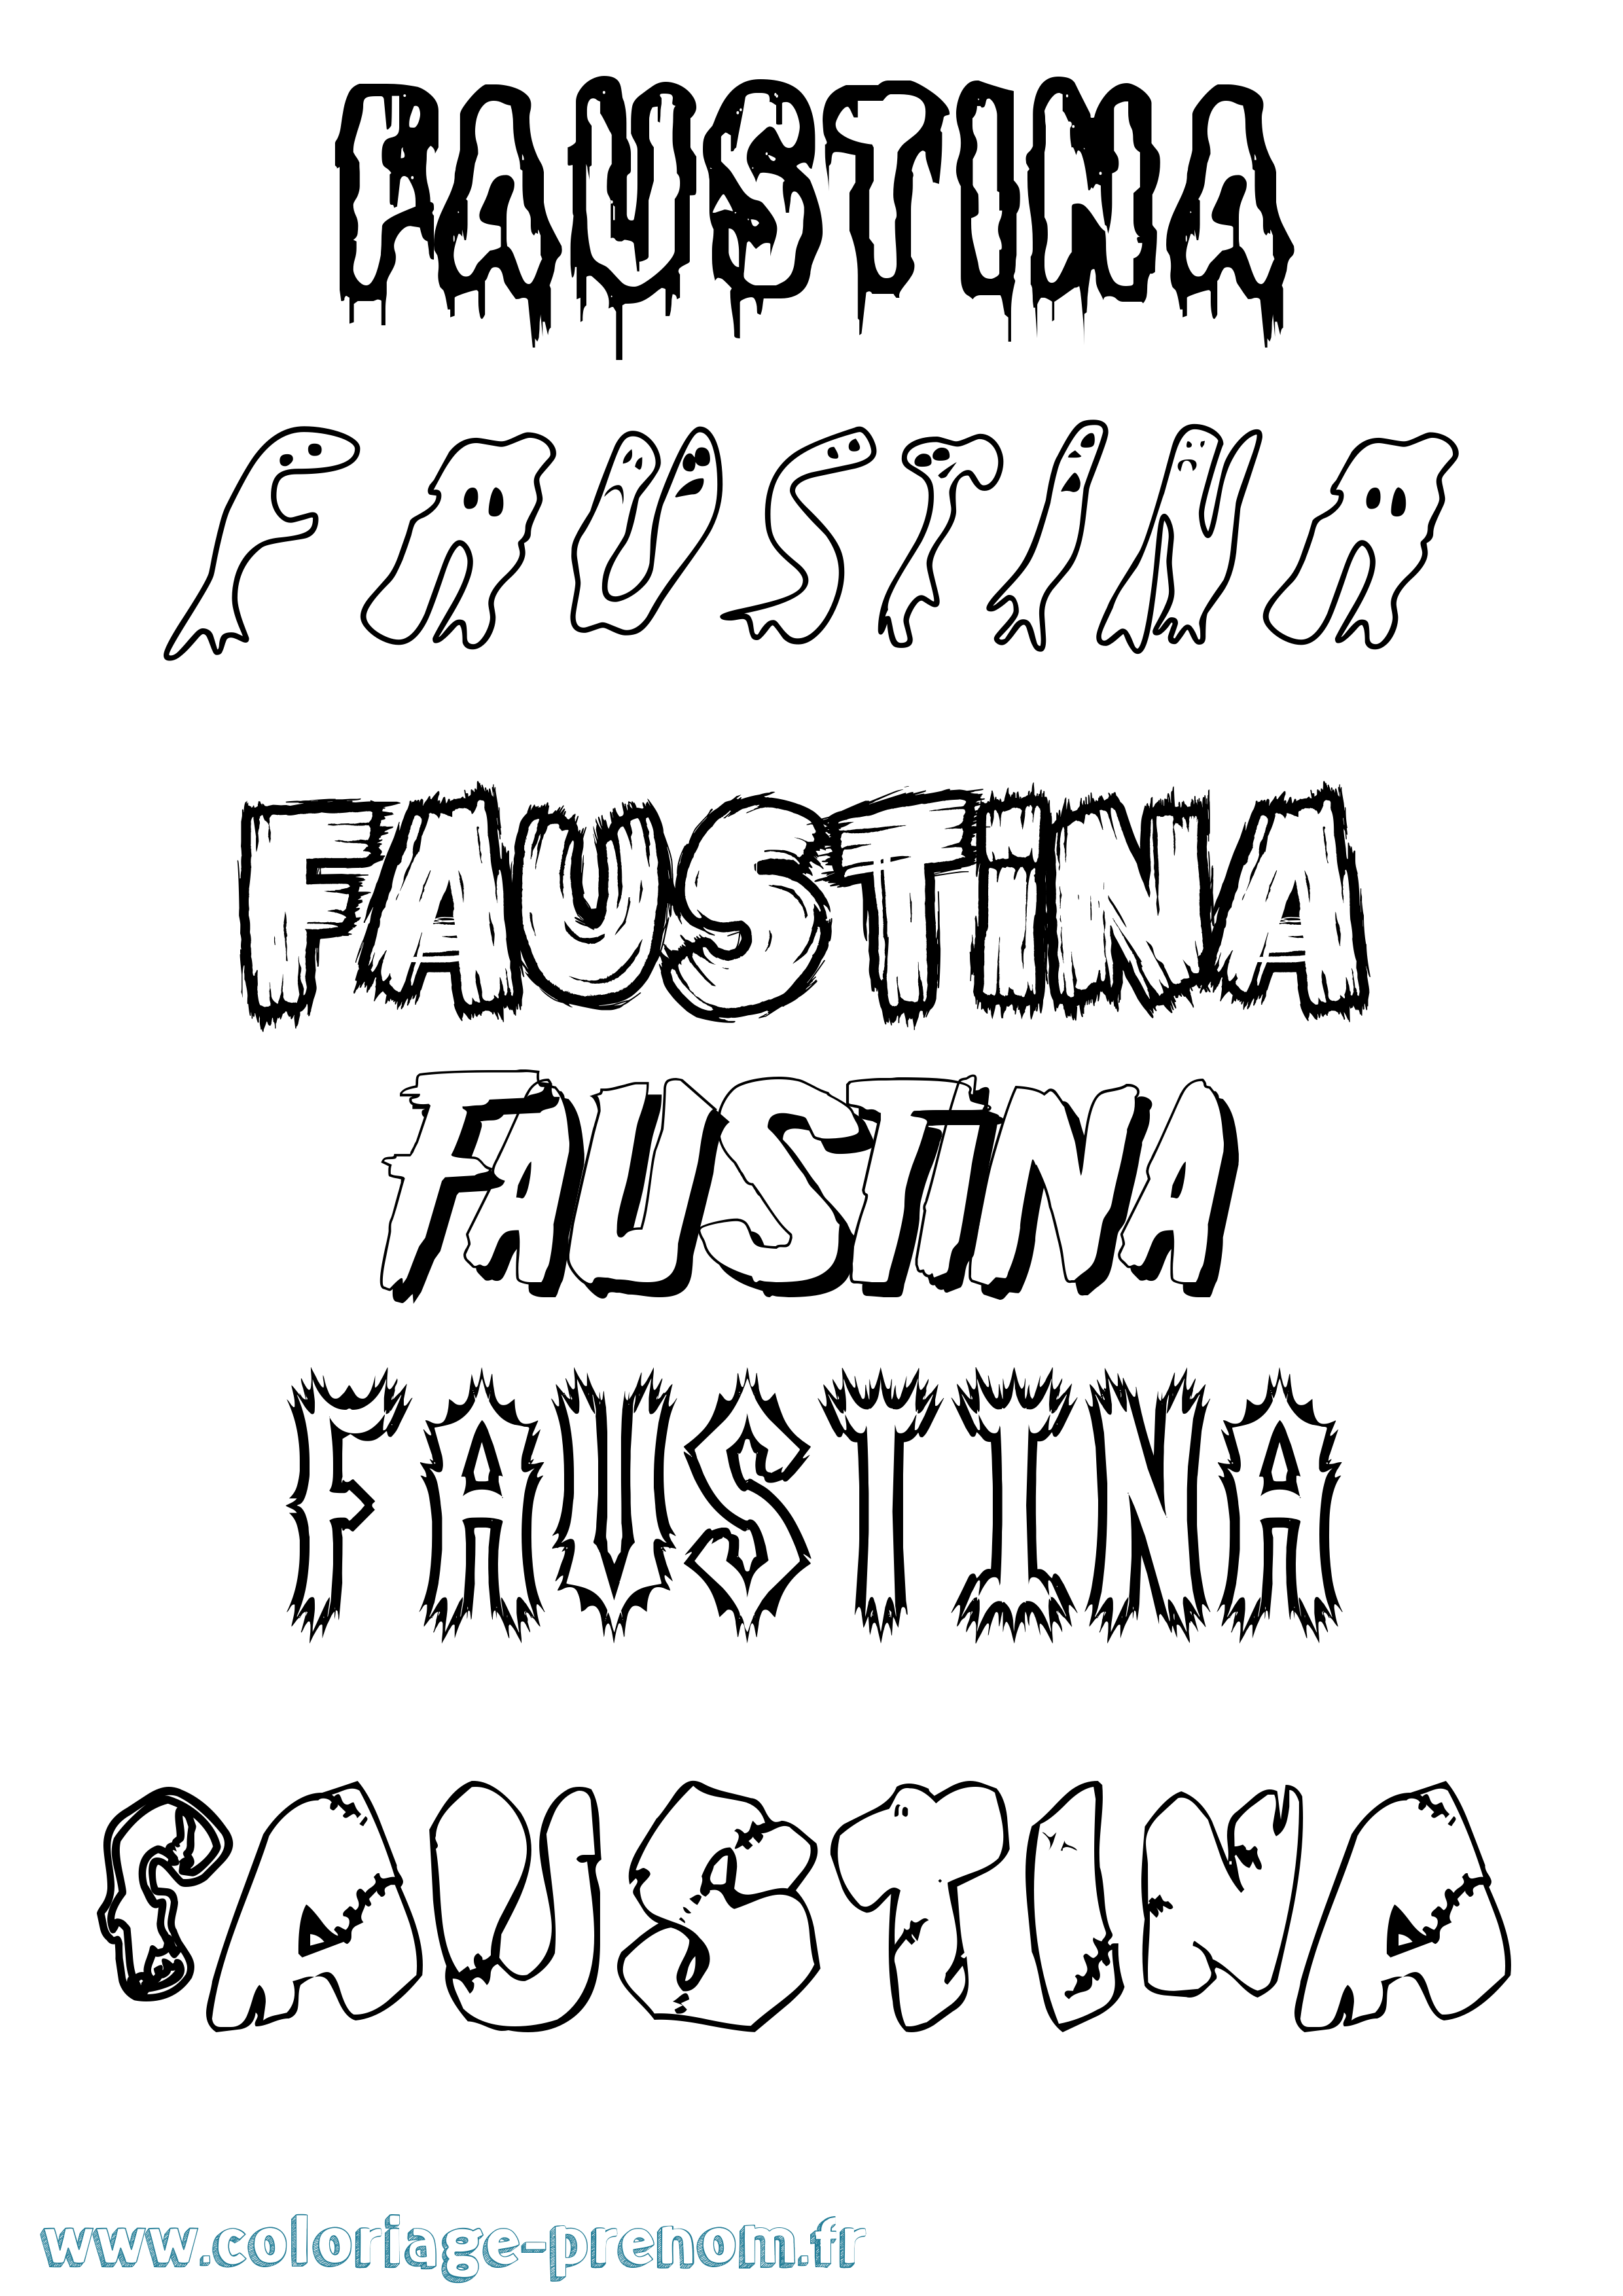 Coloriage prénom Faustina Frisson